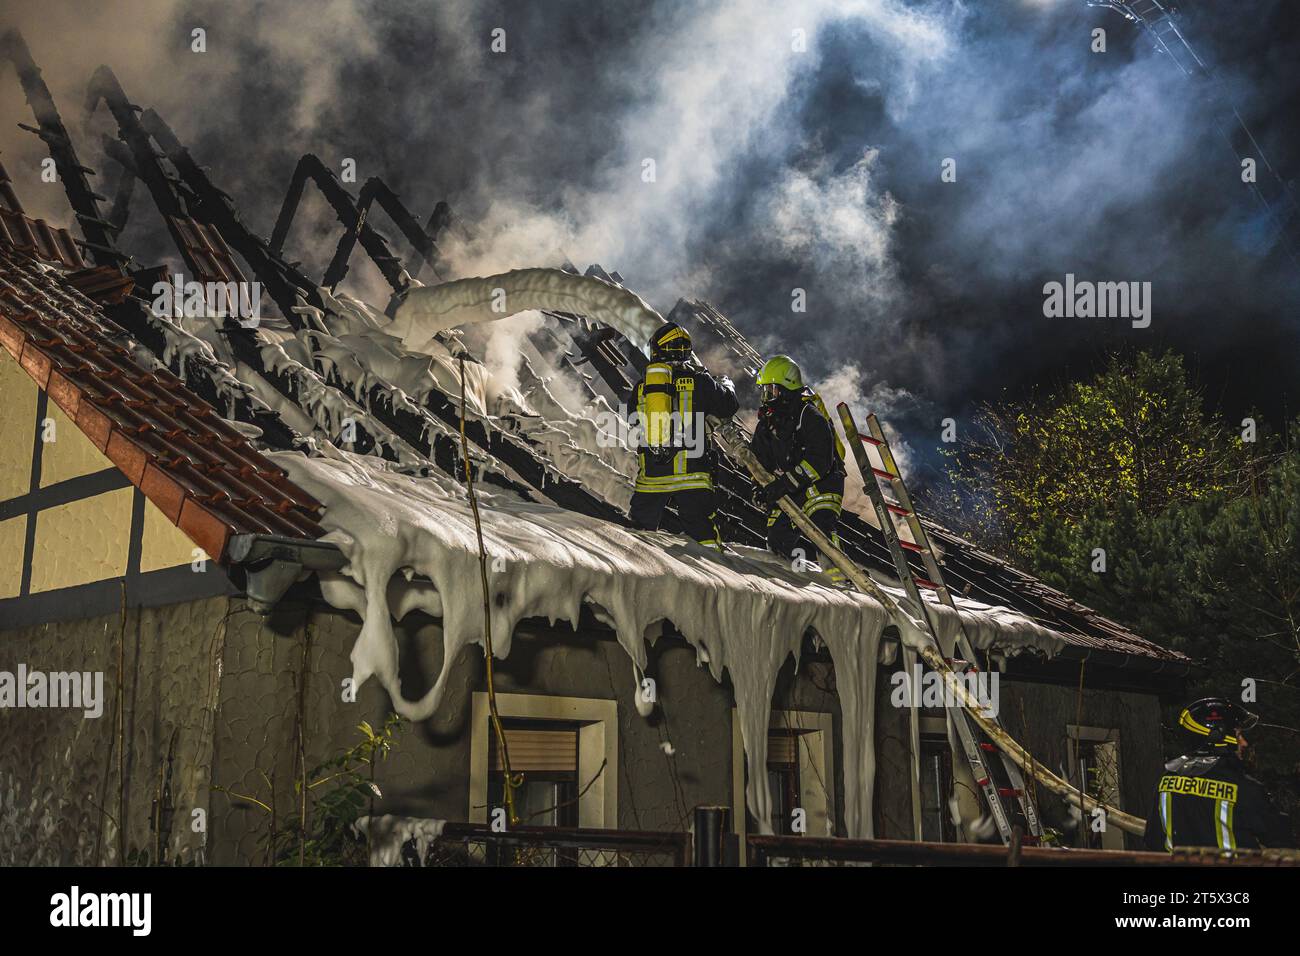 Zwei Einsatzkräfte der Feuerwehr bekämpfen einen Dachstuhlbrand mit Löschschaum. Rauch steigt aus dem völlig zerstörten Dach auf. AM 06.11.2022 Foto Stock